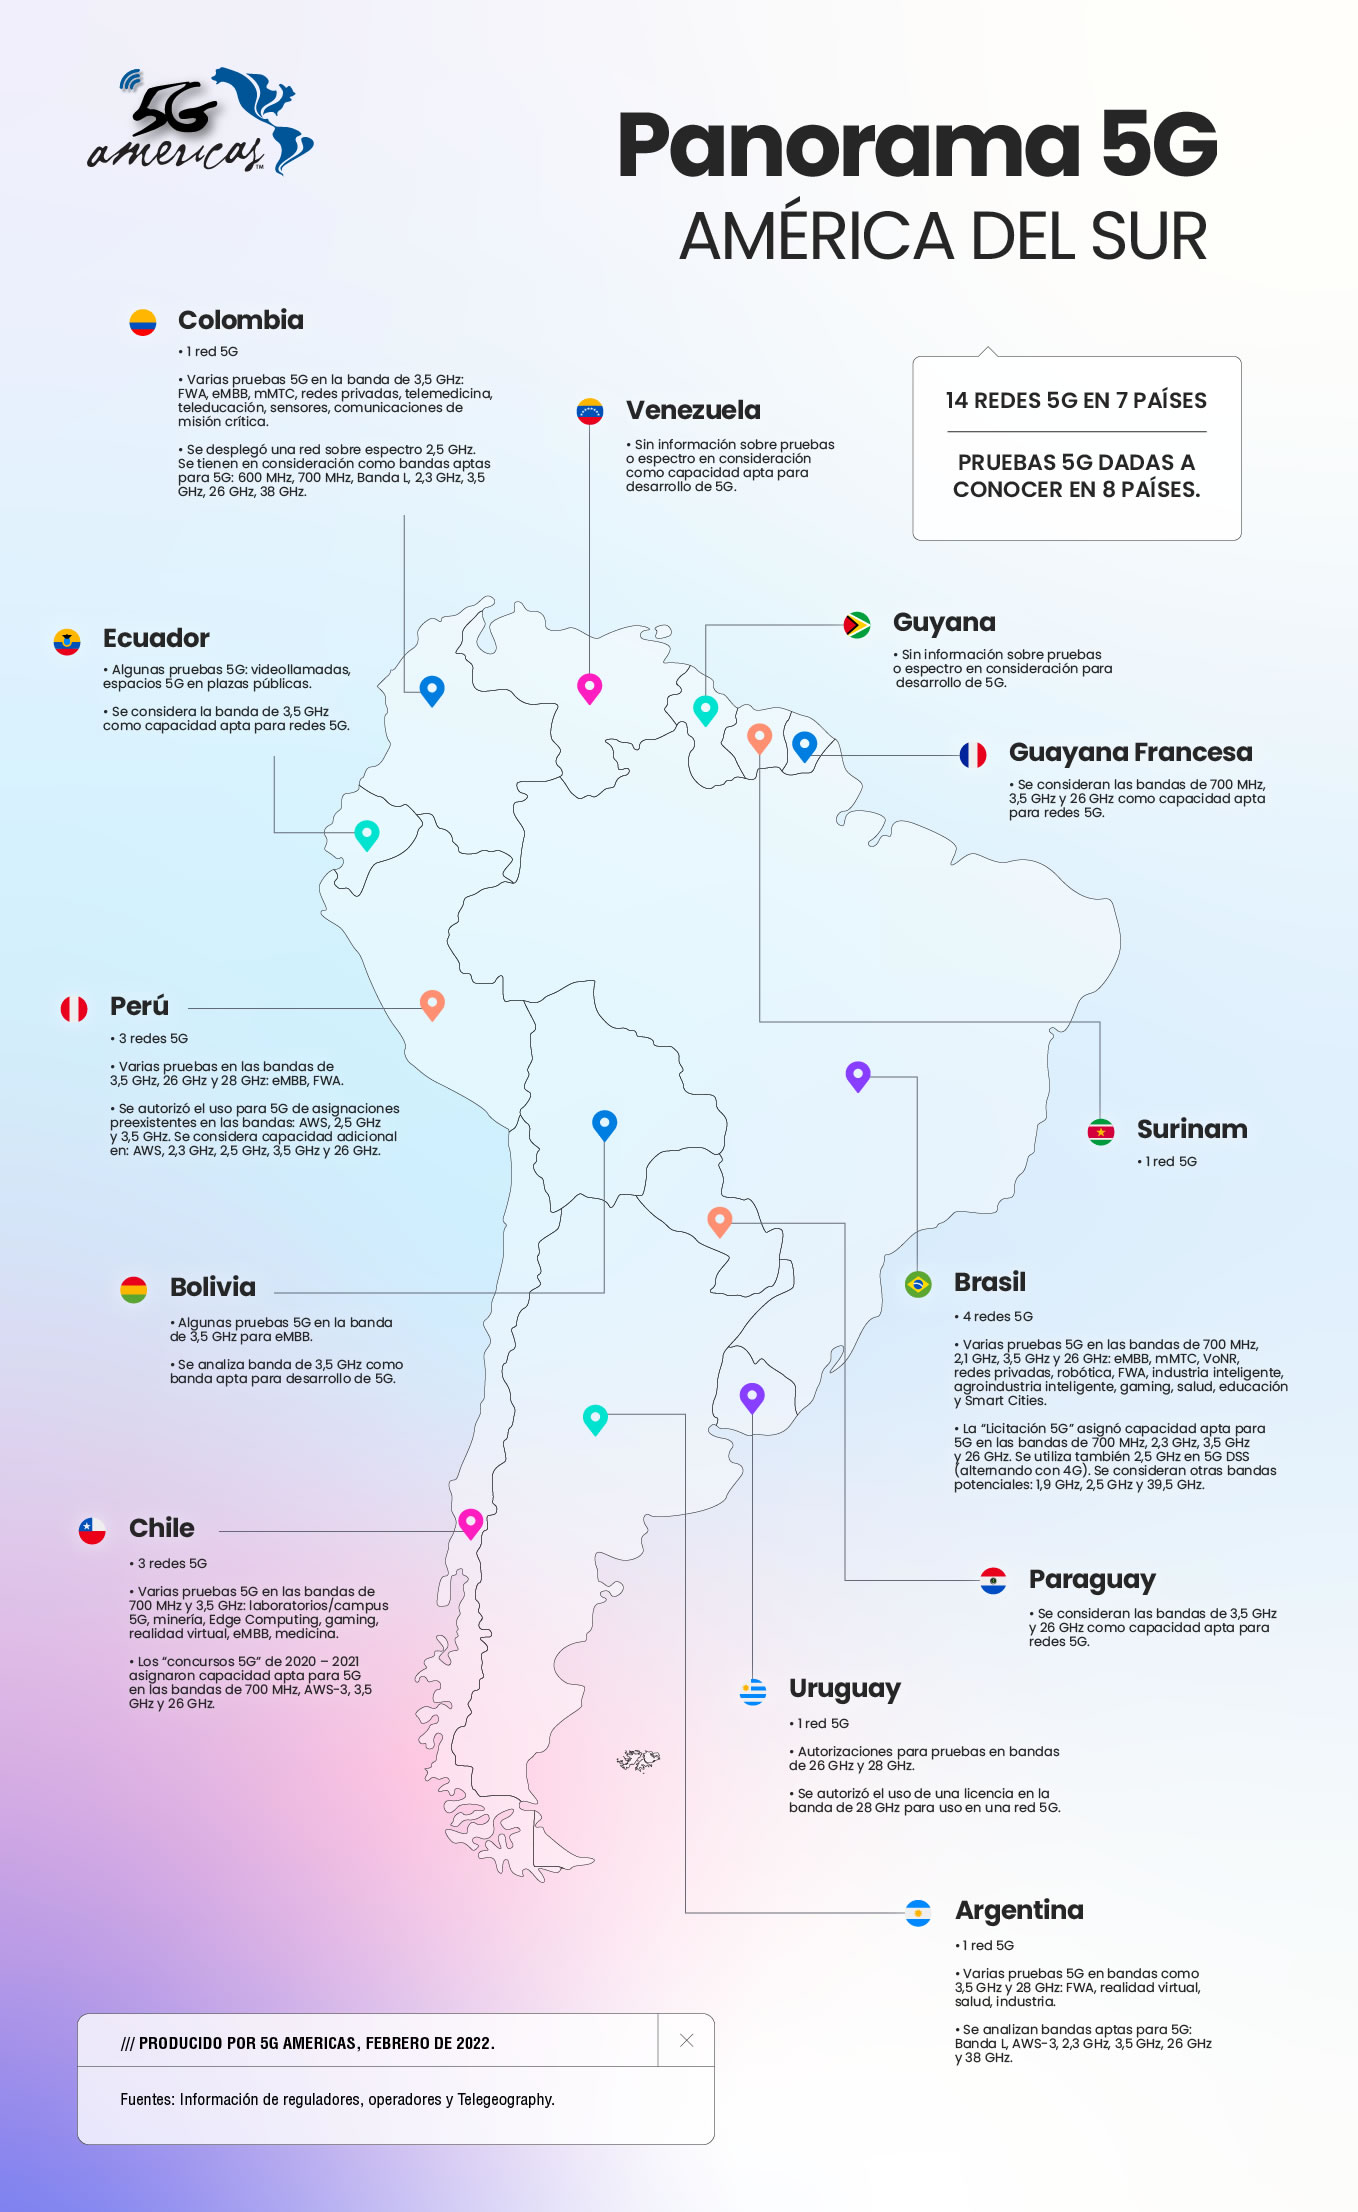 Estadisticas de redes 5G en 7 países de América del Sur